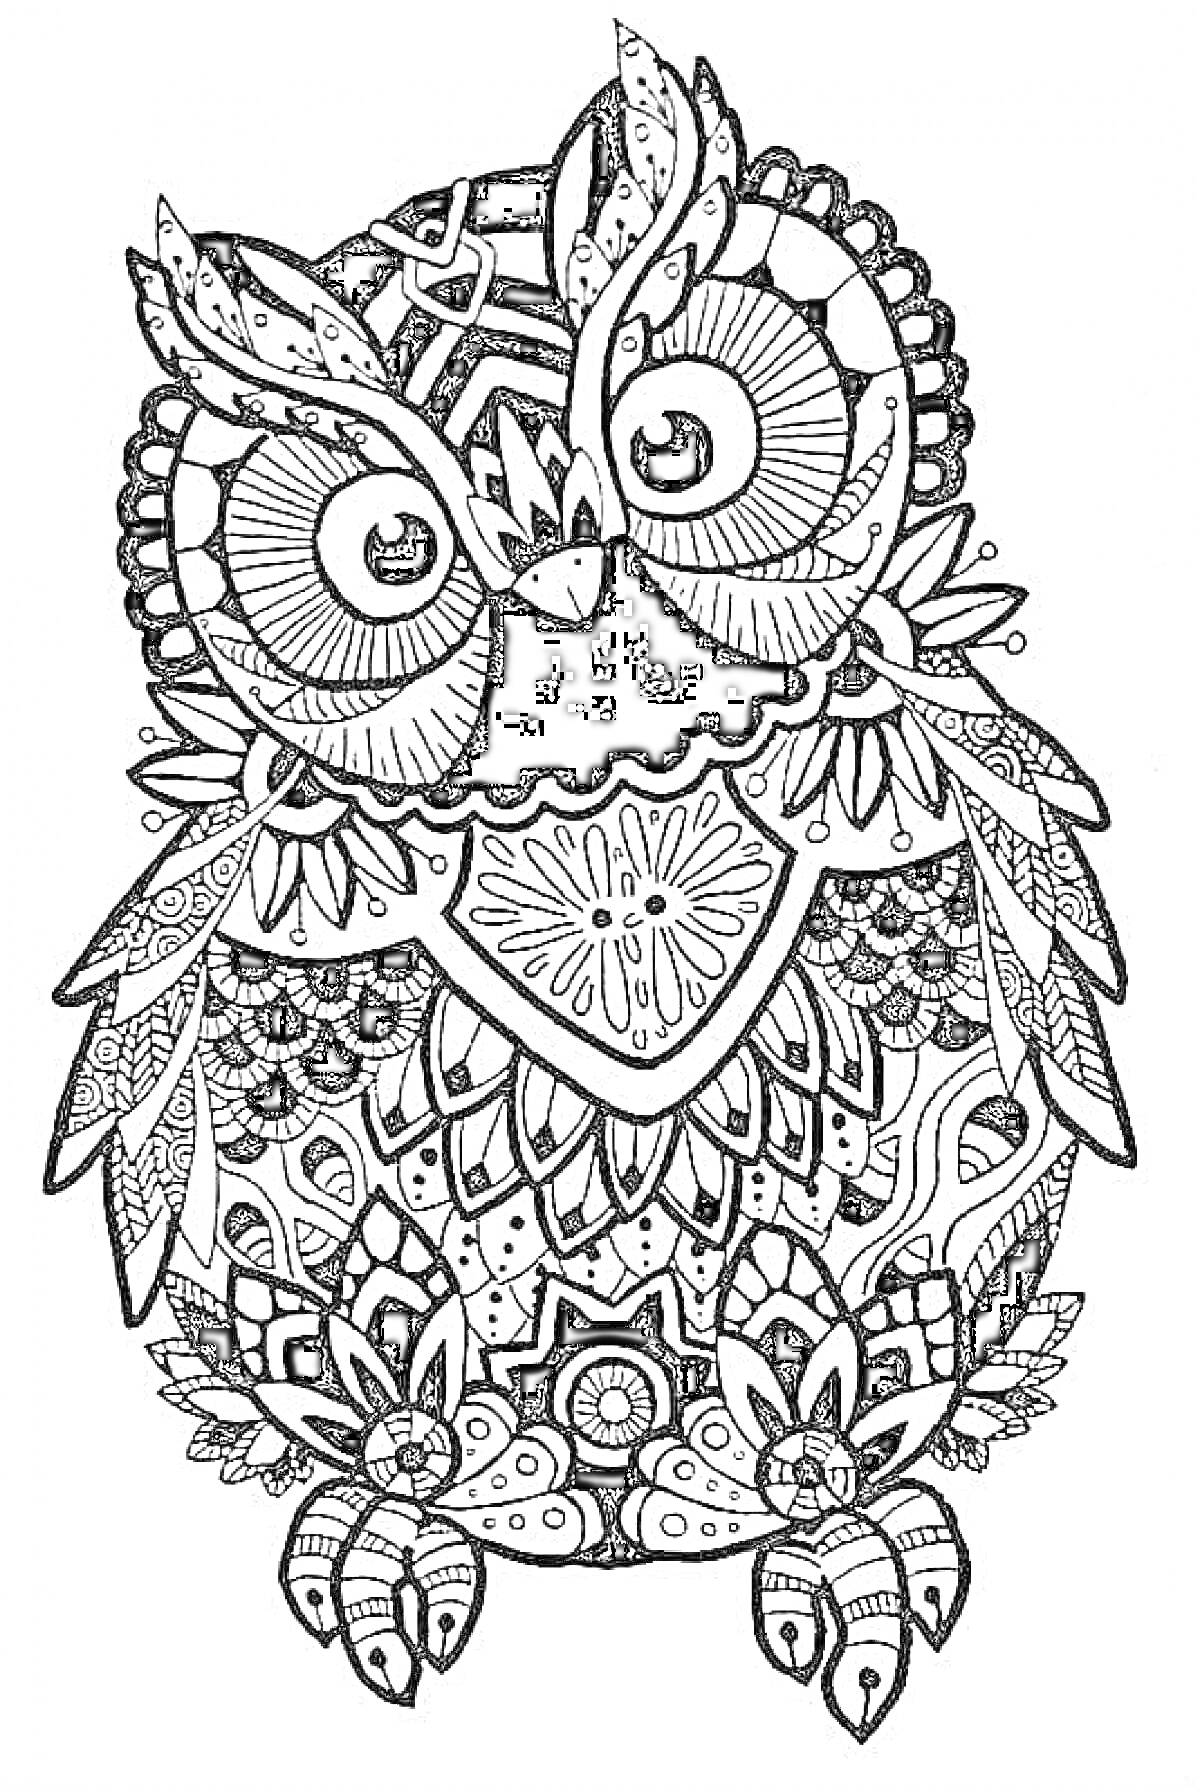 Антистрессовая раскраска совы в узорах с цветочными и геометрическими элементами